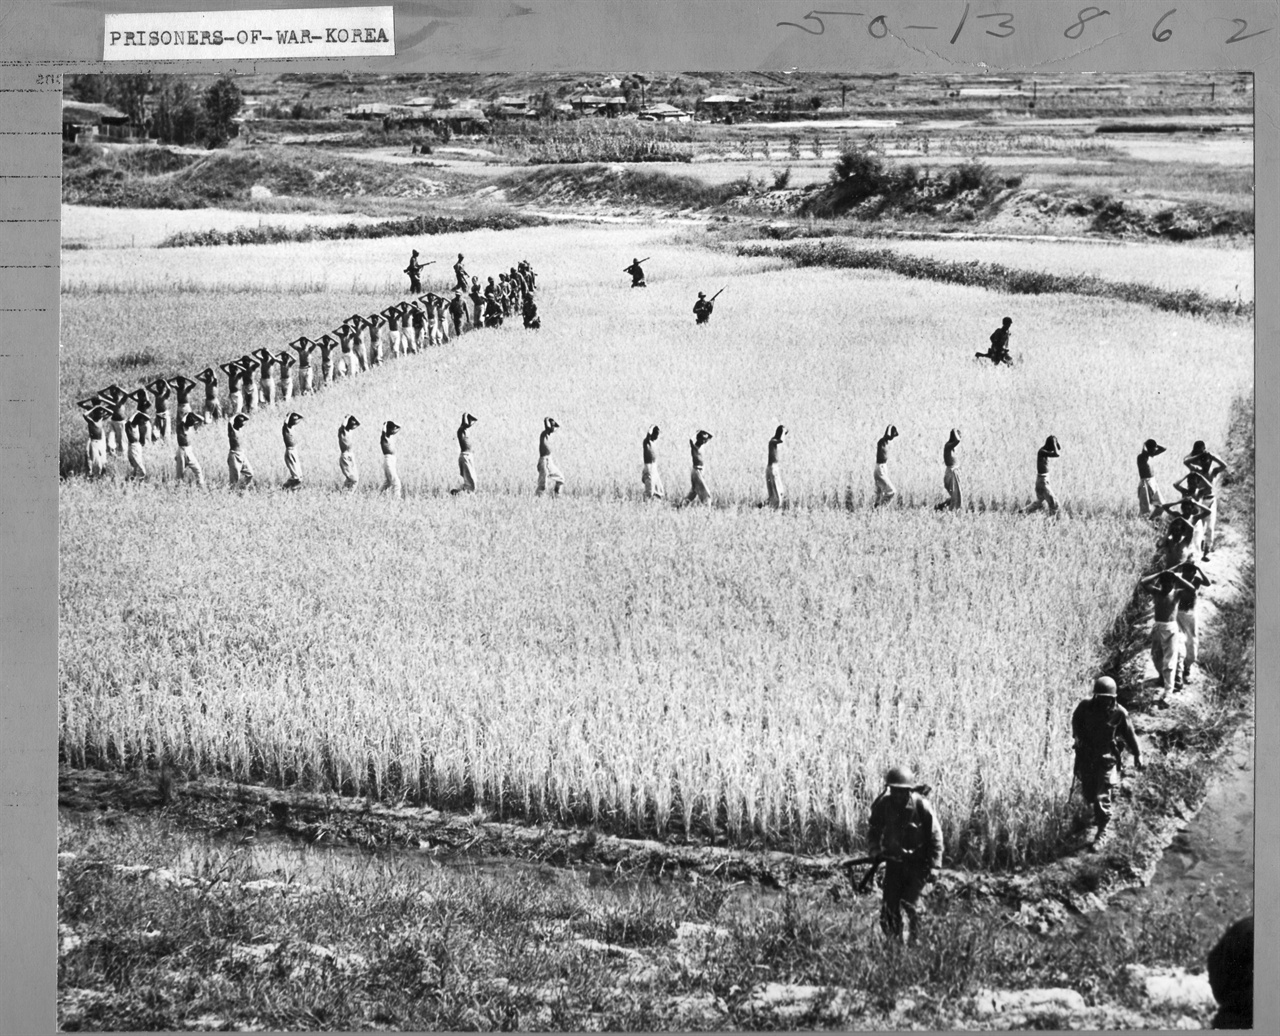 1950. 10. 미 해병대들이 전투 중에 생포한 포로들을 논길로 인솔하고 있다.